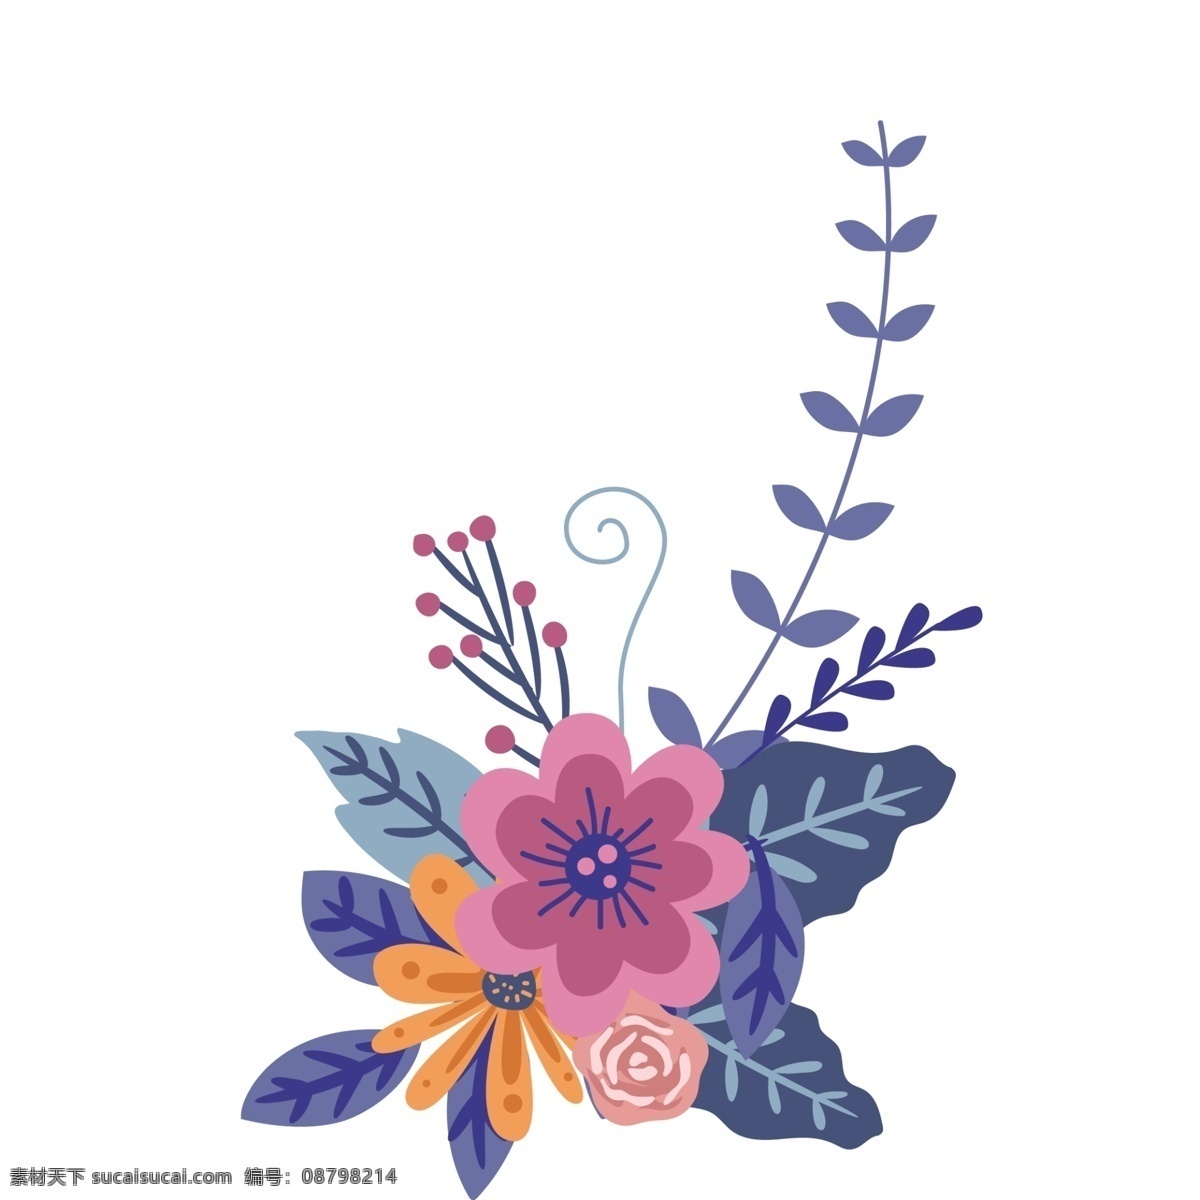 彩色 点缀 花朵 免 抠 小清 新卡 通 手绘花朵 红花 彩色的花朵 多种颜色 叶子 橄榄叶 植物 花边 花框点缀 小清新